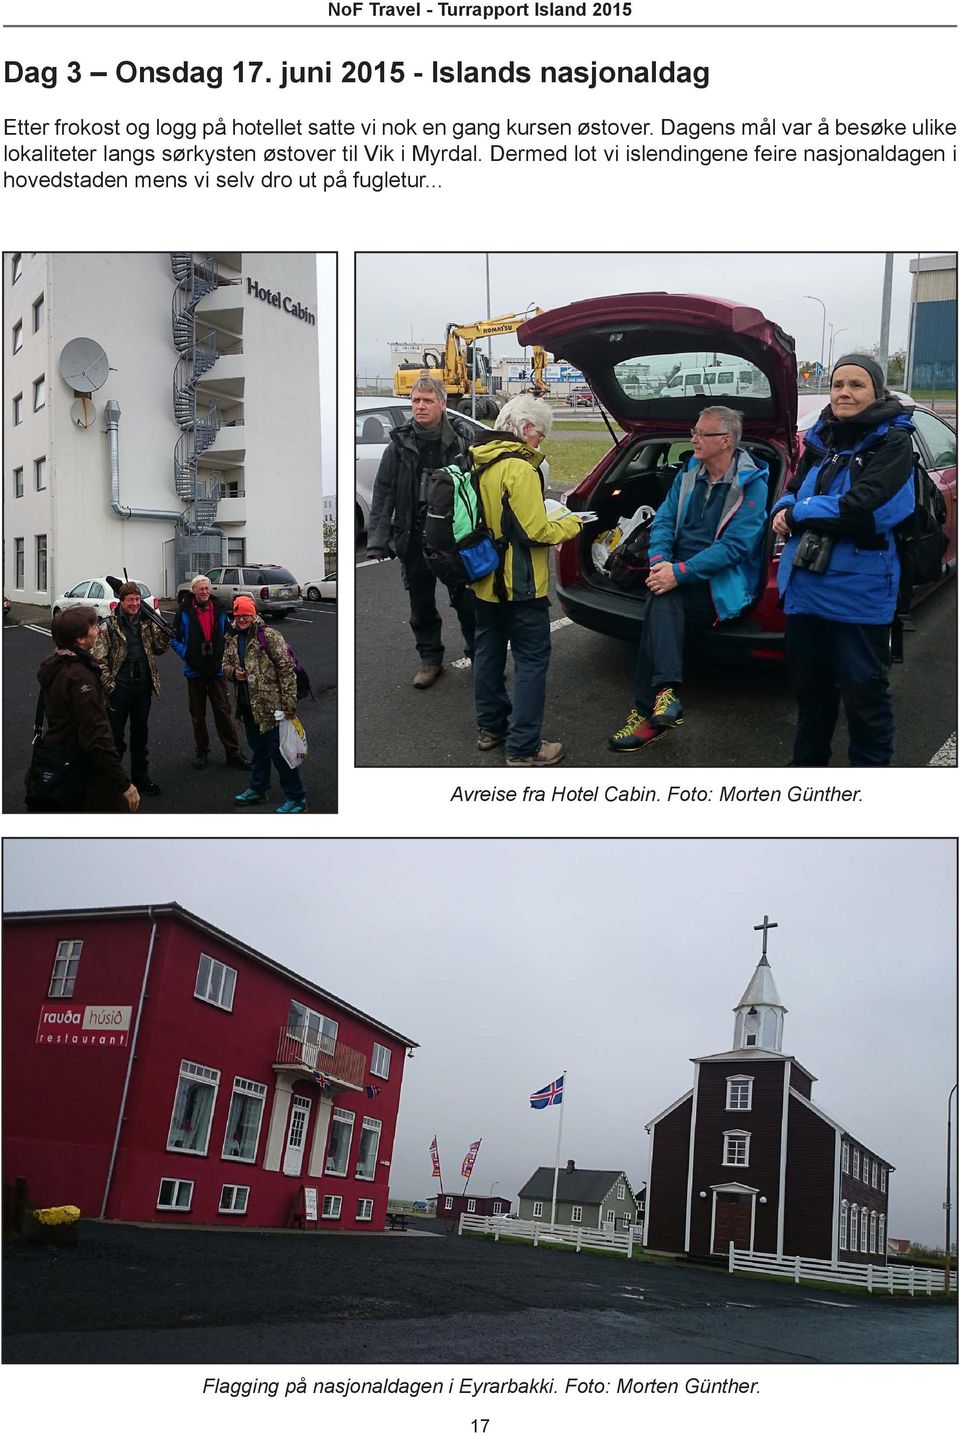 Dagens mål var å besøke ulike lokaliteter langs sørkysten østover til Vik i Myrdal.